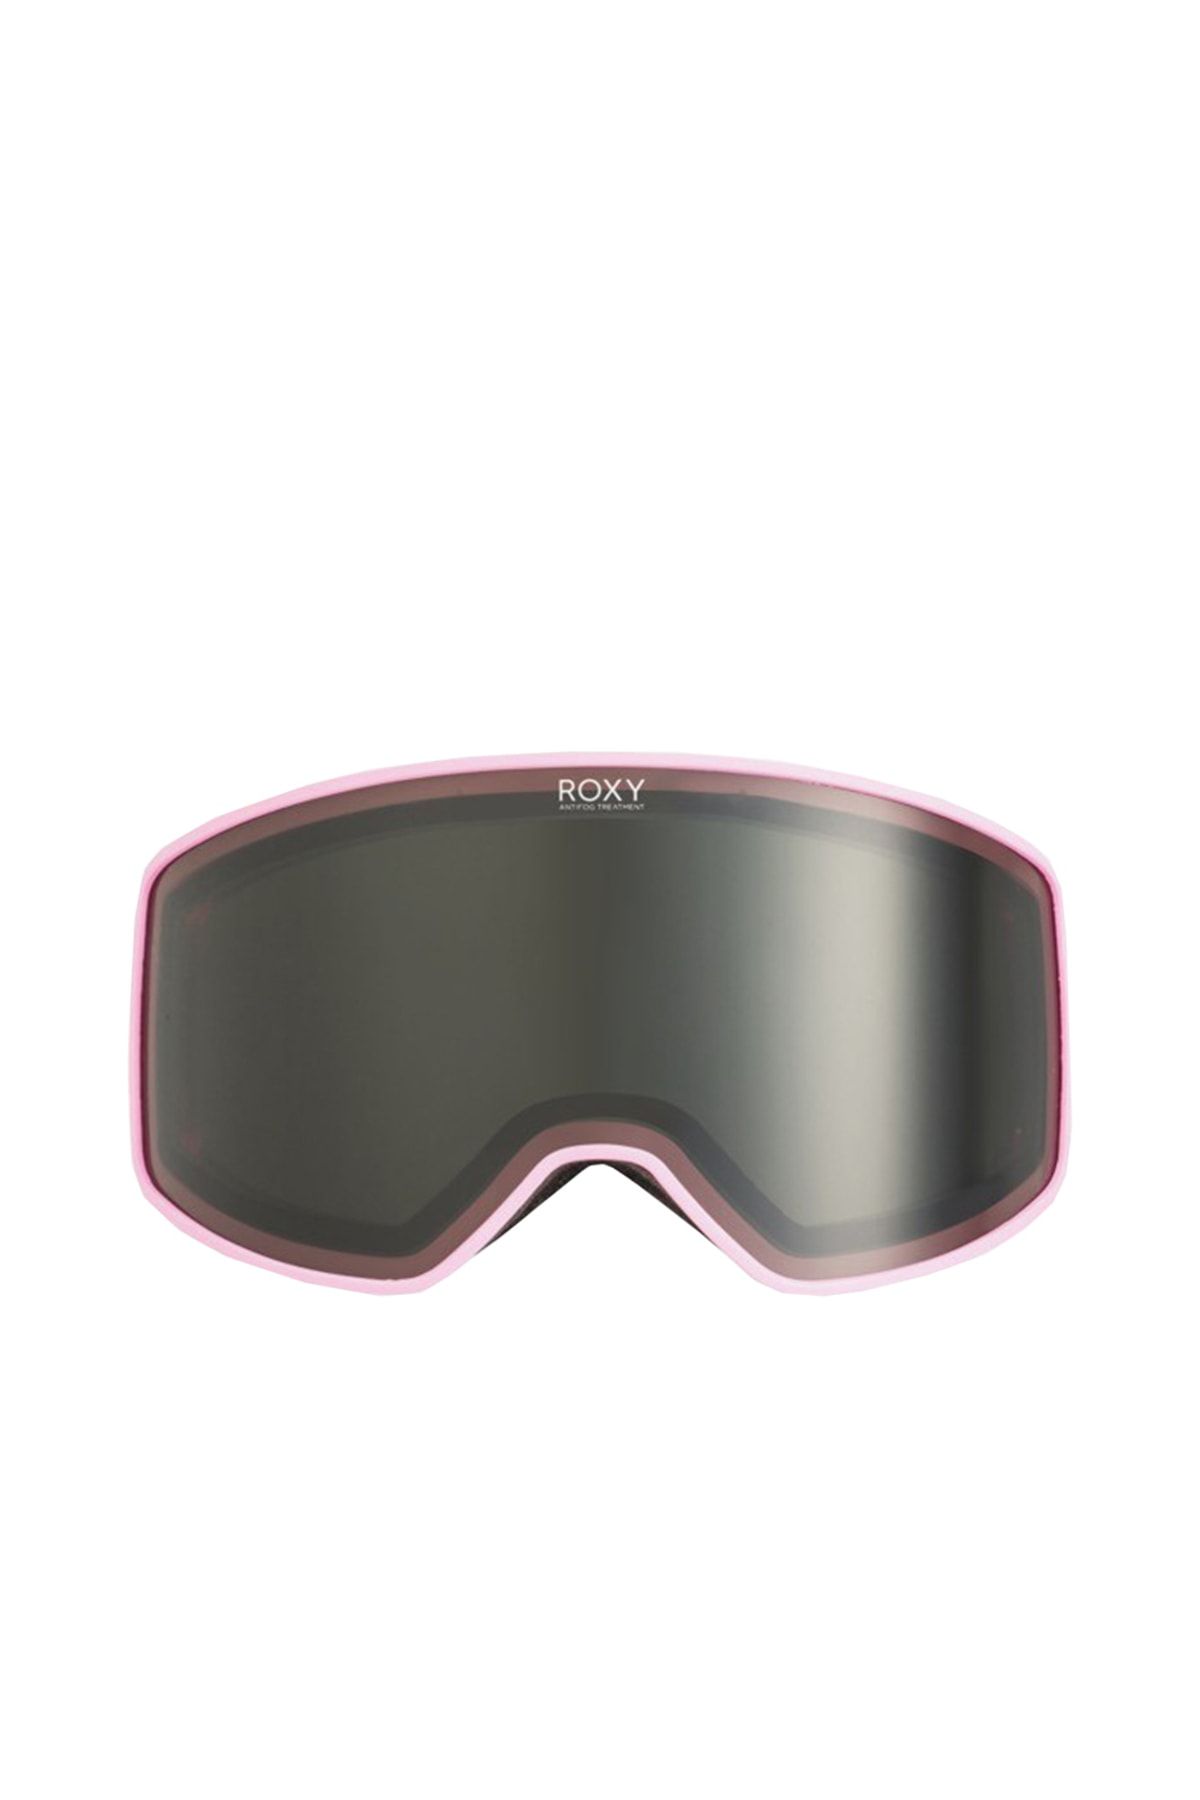 Roxy Storm Kadın Kayak Gözlüğü